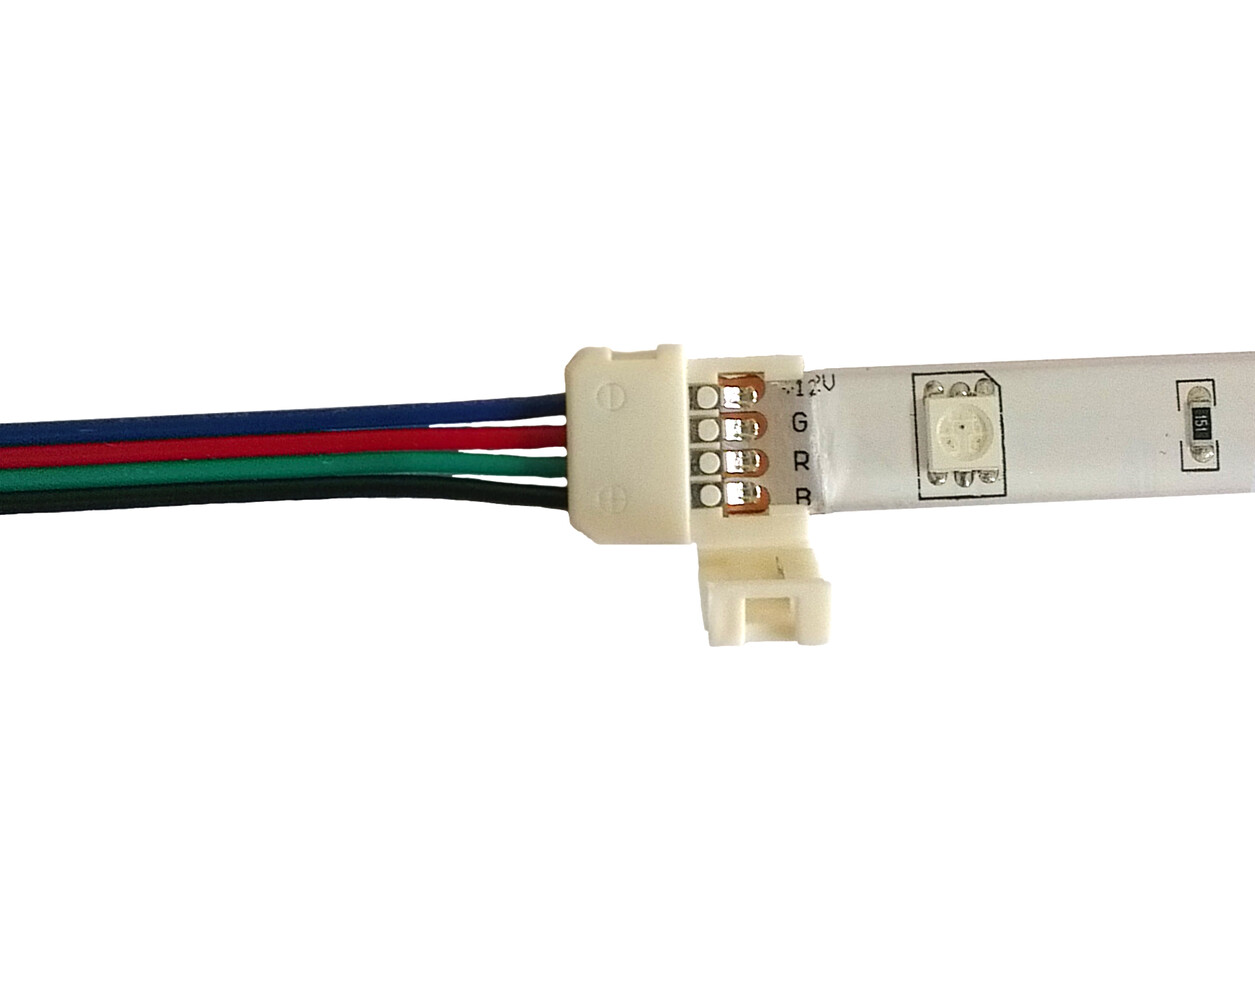 LED Universum LED Streifen Kabel - 15cm 4pol Schnellverbinder für RGB LED Streifen